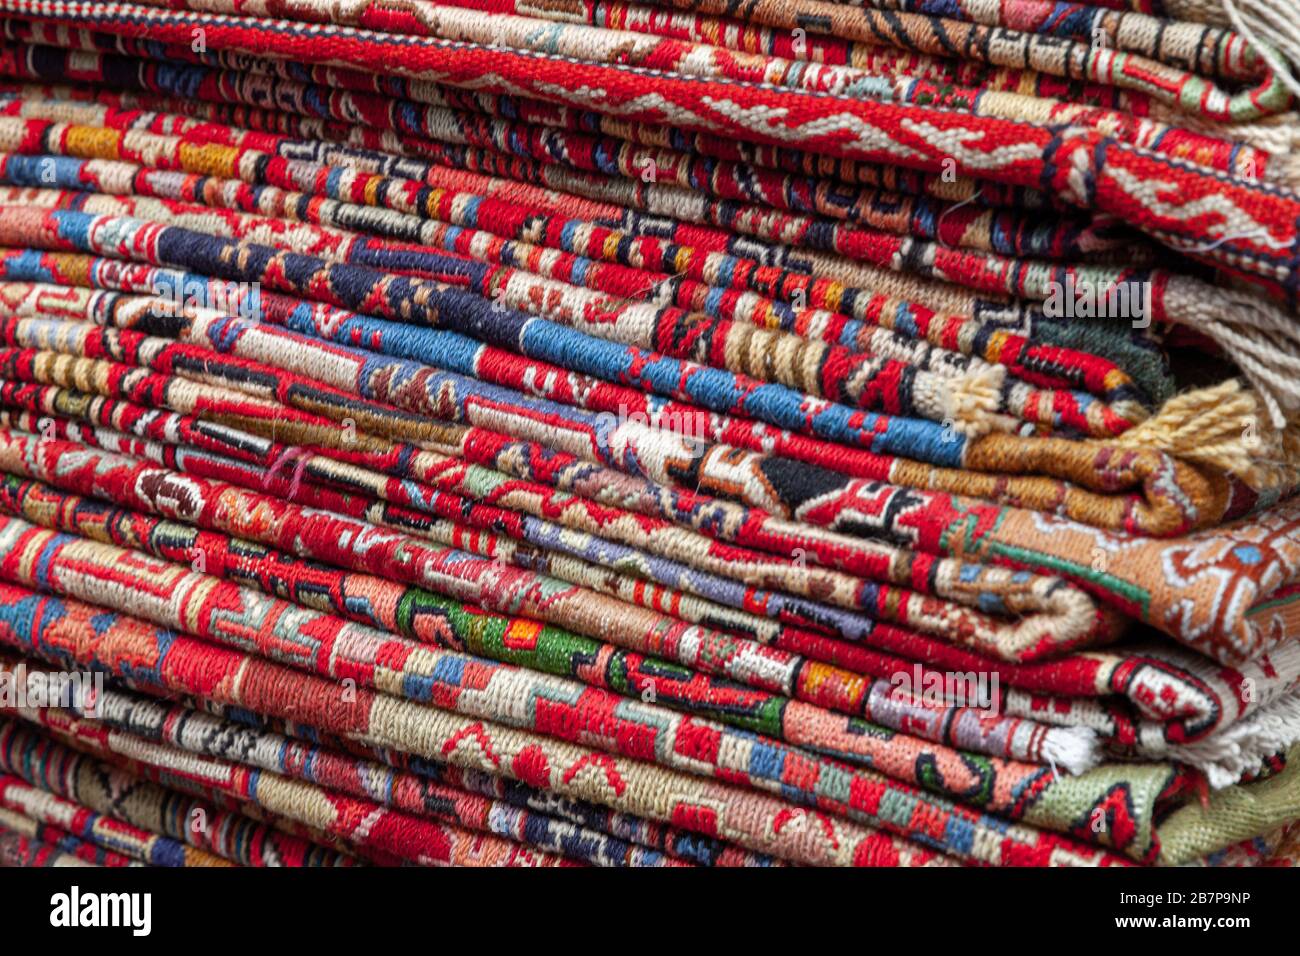 Una pila de alfombras caucásicas y orientales representadas en una tienda georgiana local. Tbilisi, Georgia Foto de stock